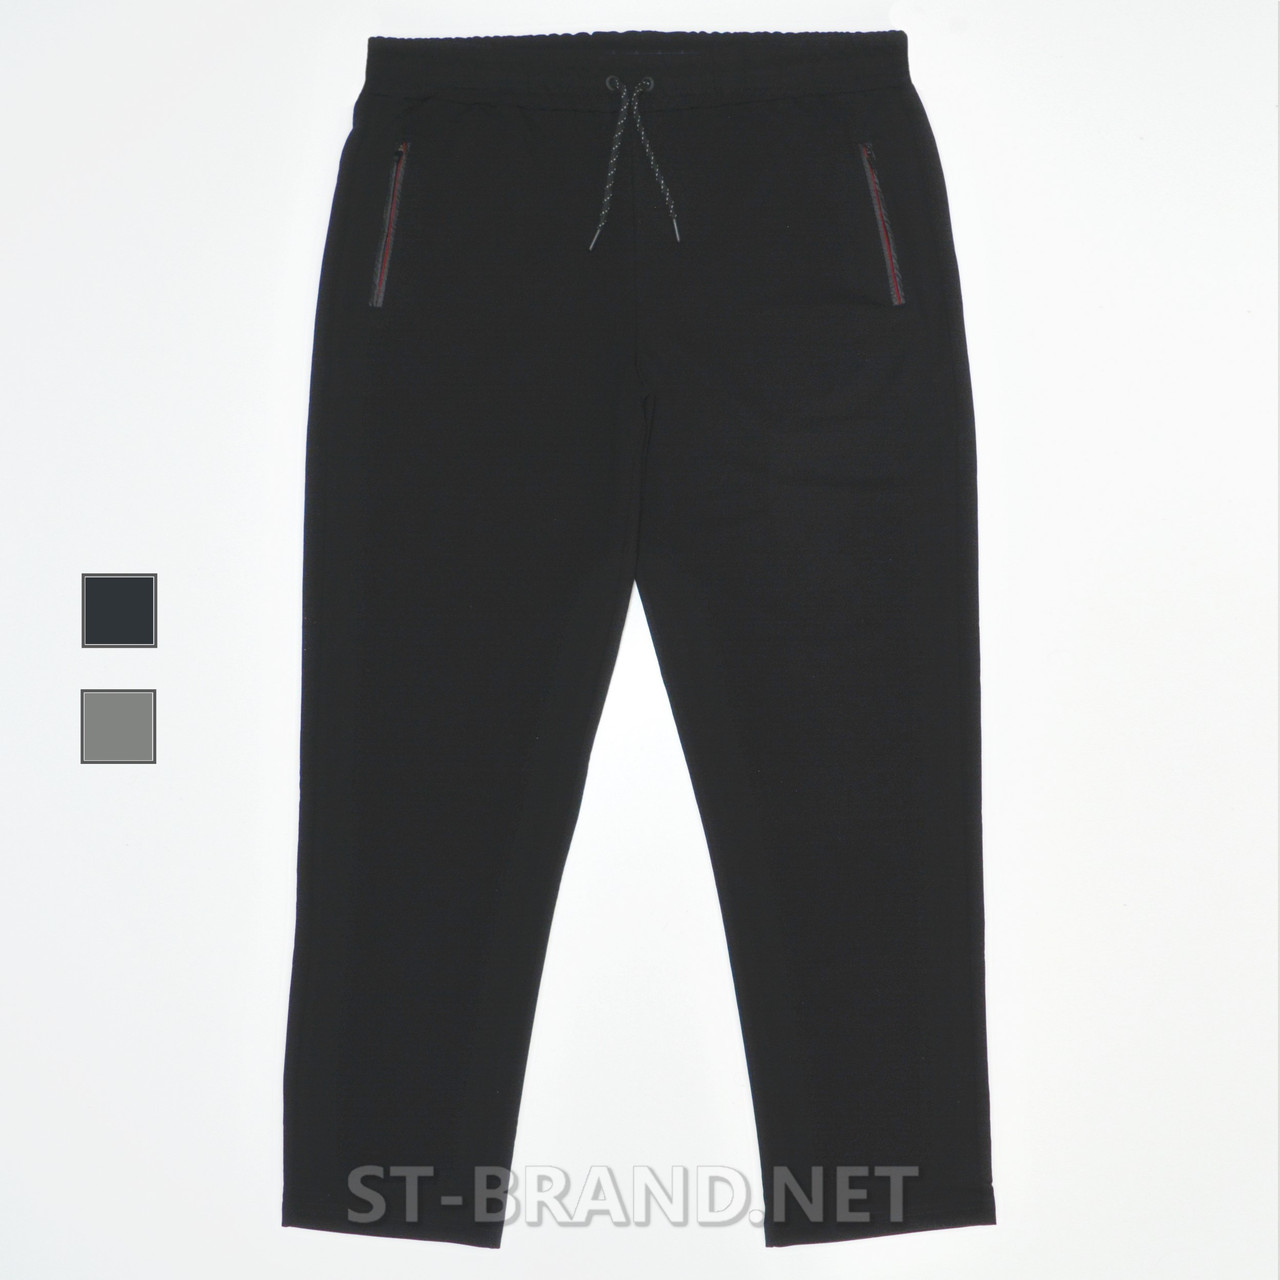 Розміри: 58,60. Зручні та практичні чоловічі спортивні штани  великих розмірів (Батал) – чорні